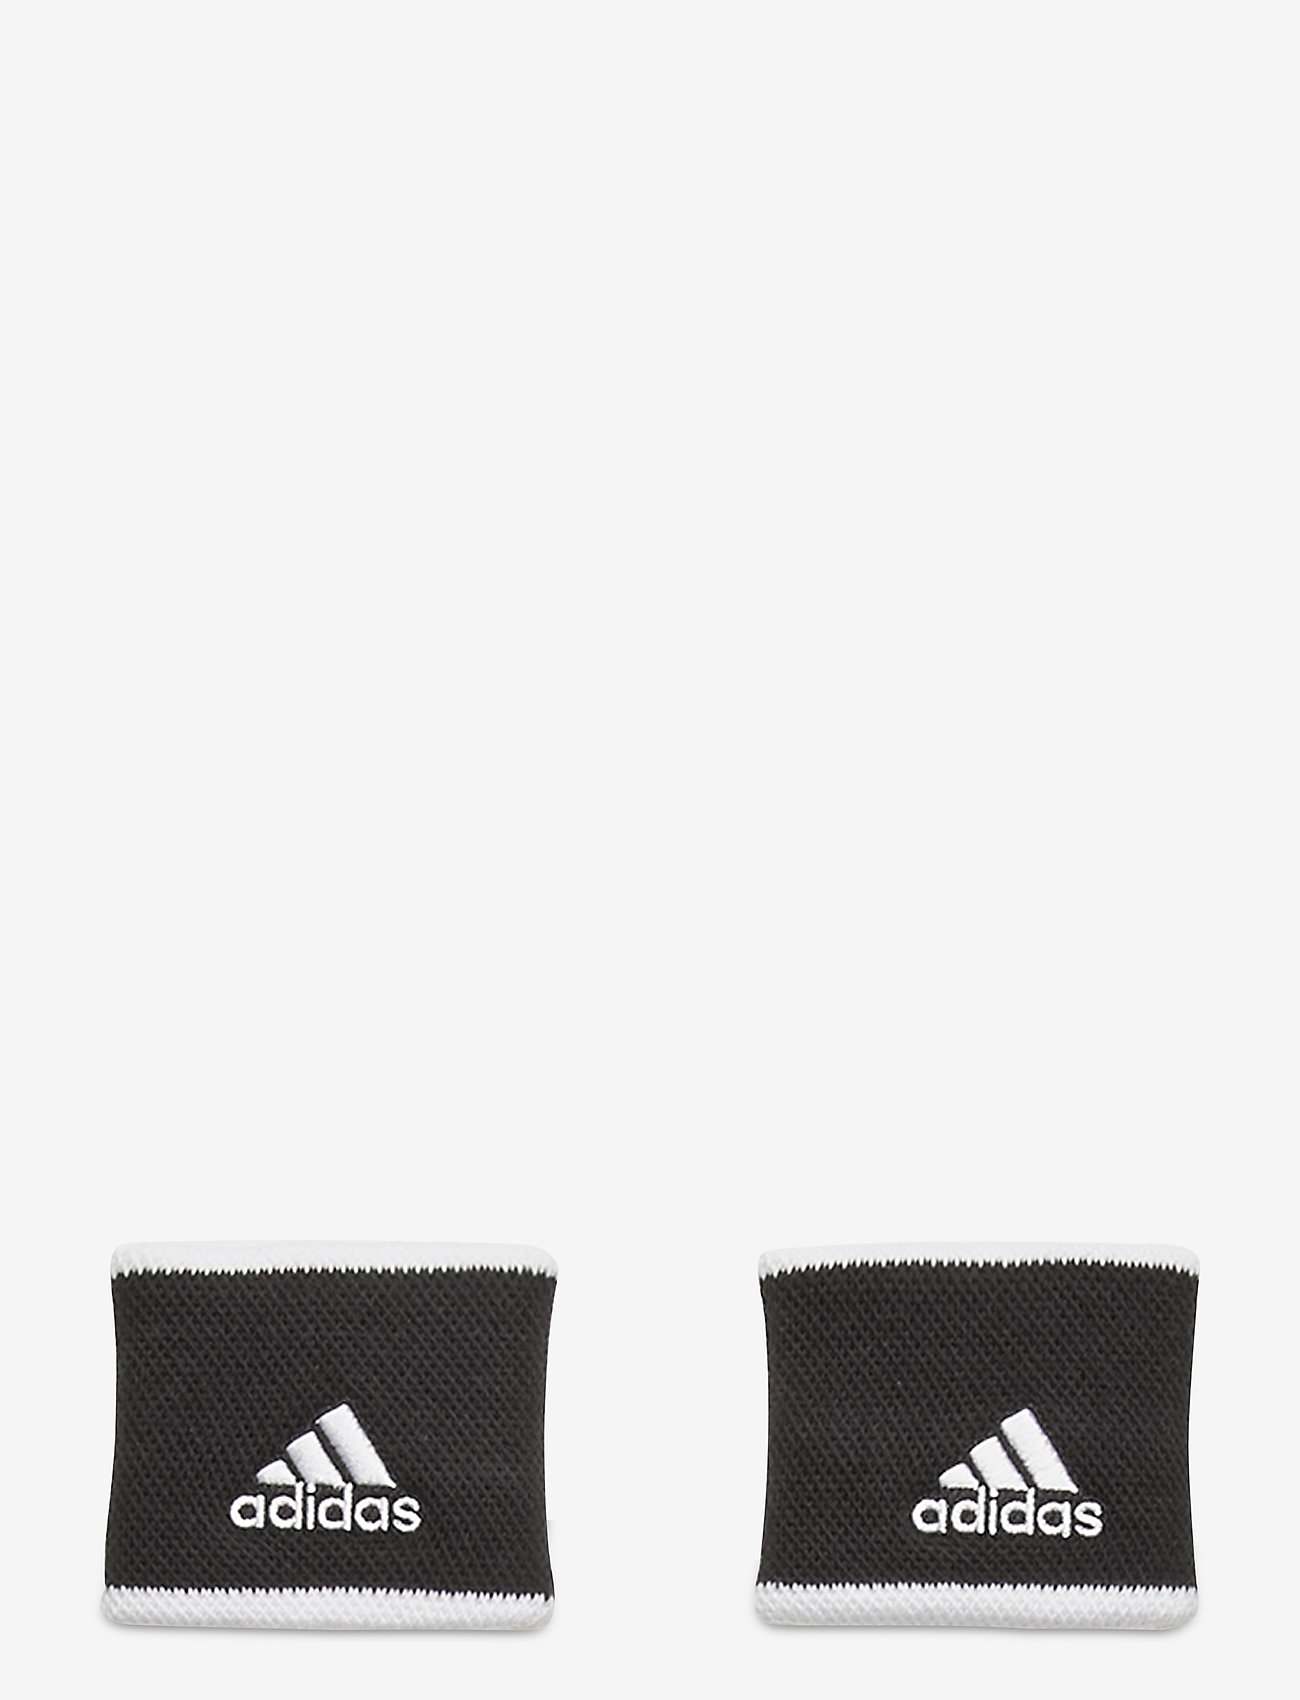 Tennis Wristband Small (Black/white 